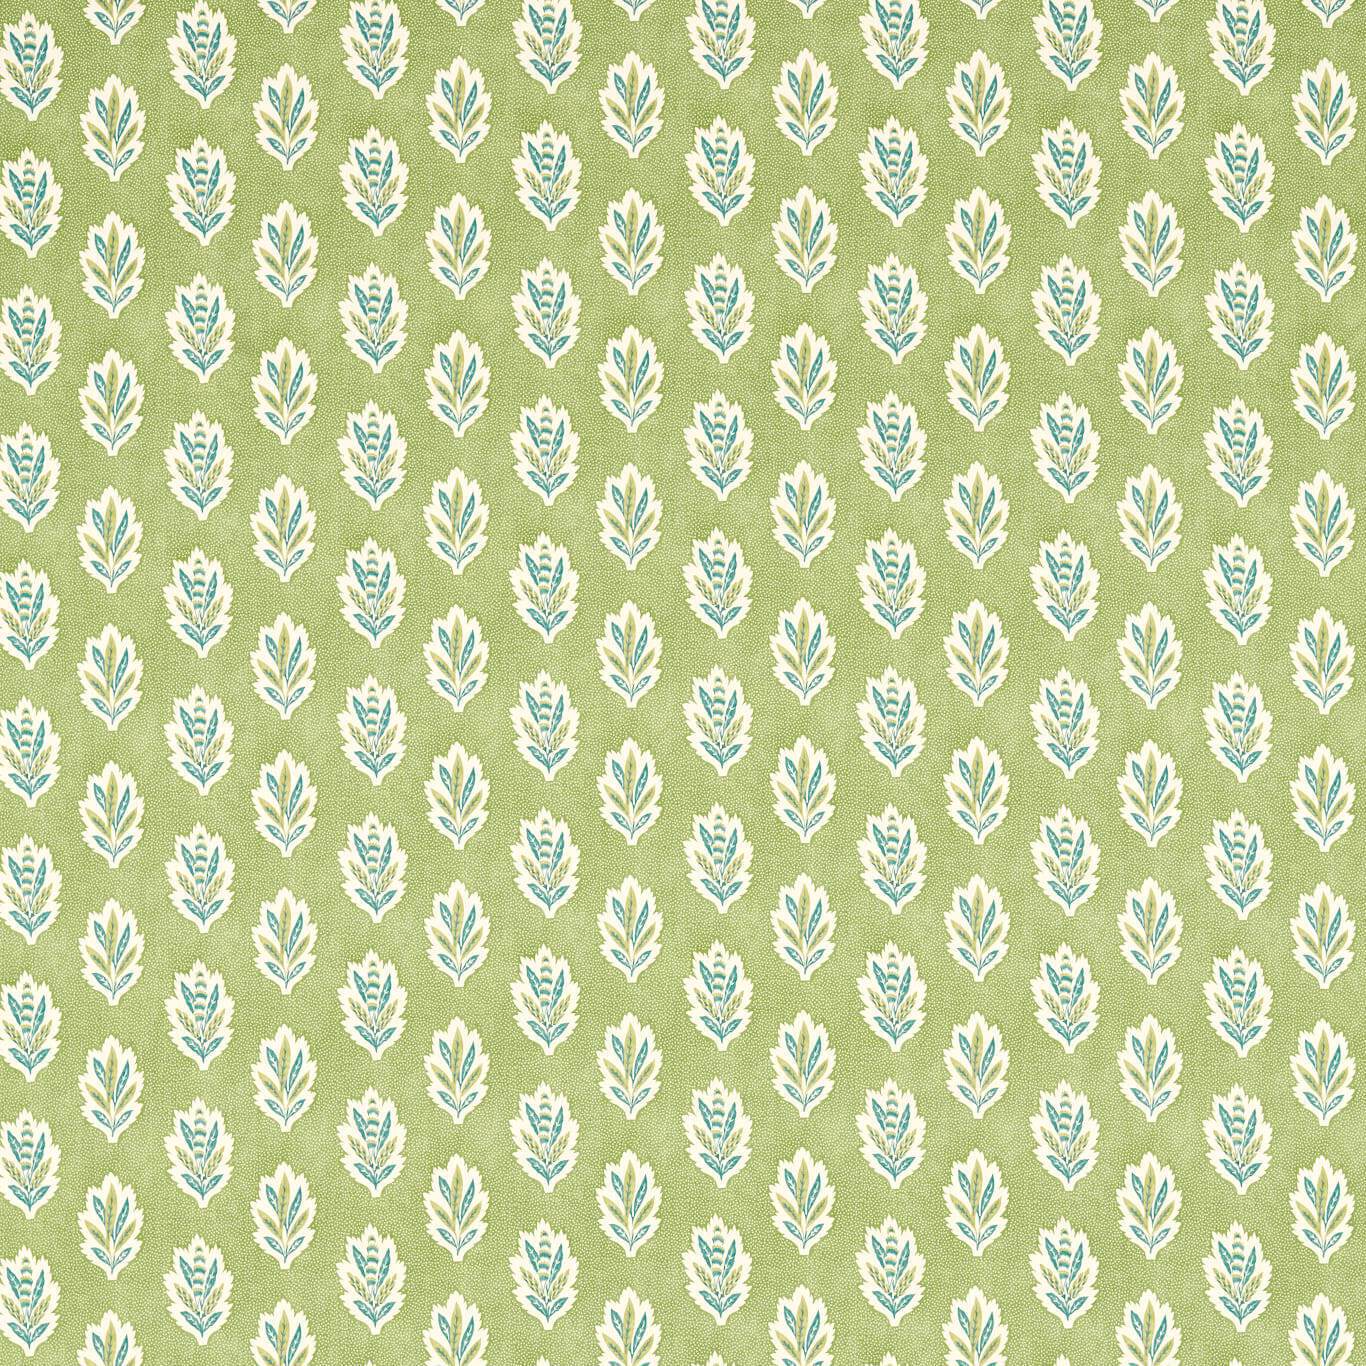 Sessile Leaf Fabric